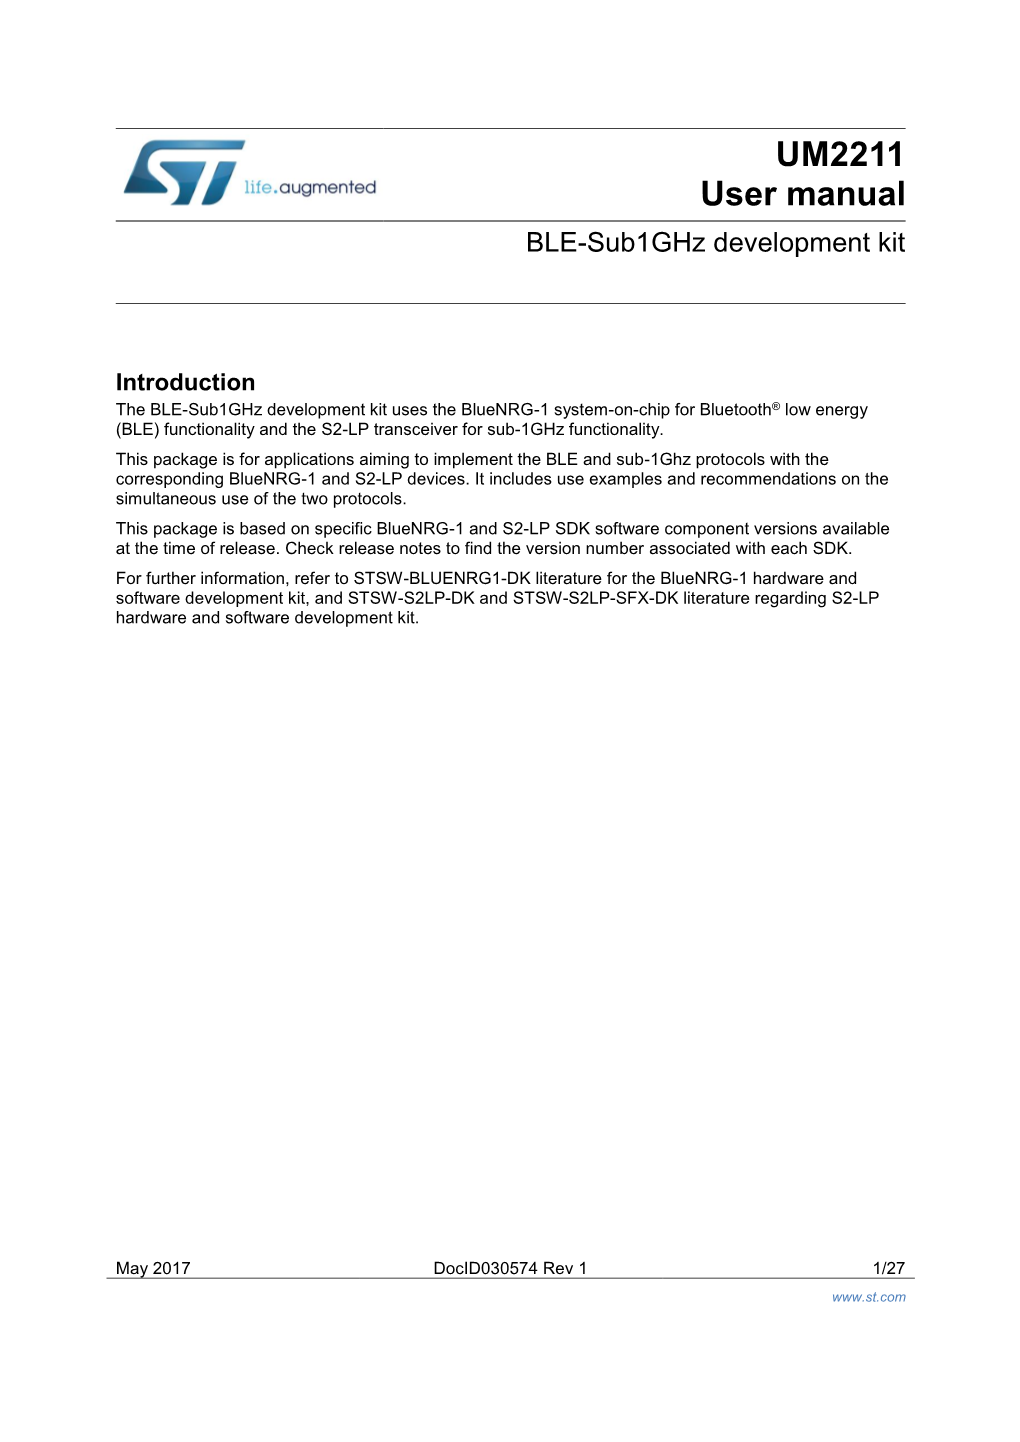 BLE-Sub-1Ghz Development